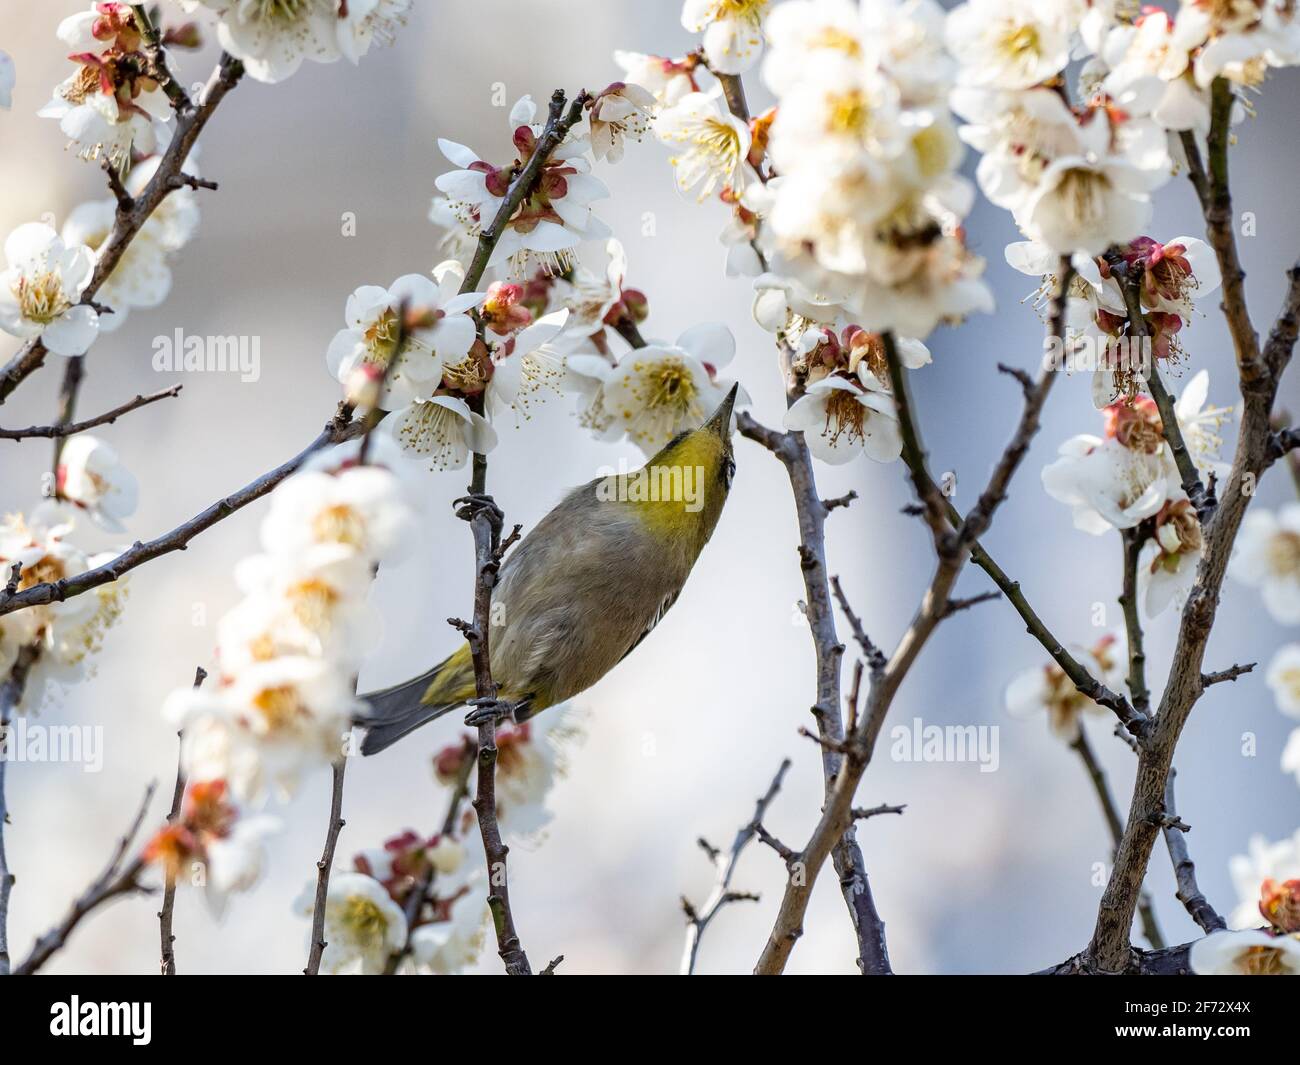 Un oeil blanc japonais, également appelé oeil blanc de guerre ou oeil blanc de montagne, Zosterops japonicus, perche parmi les fleurs de pruniers du début du printemps Banque D'Images